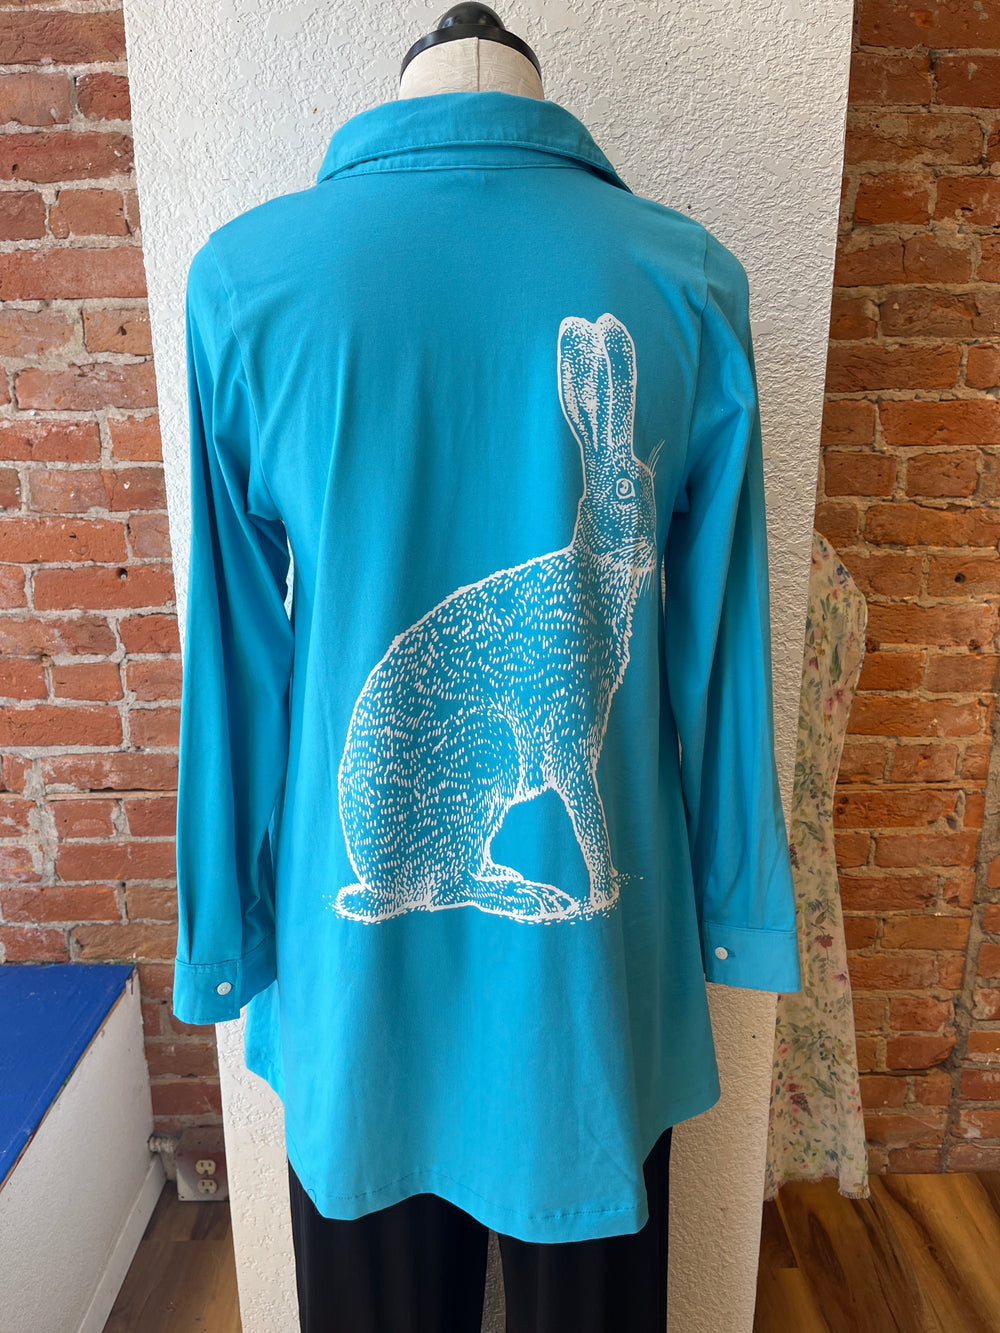 Flutter shirt, button-front bunny print